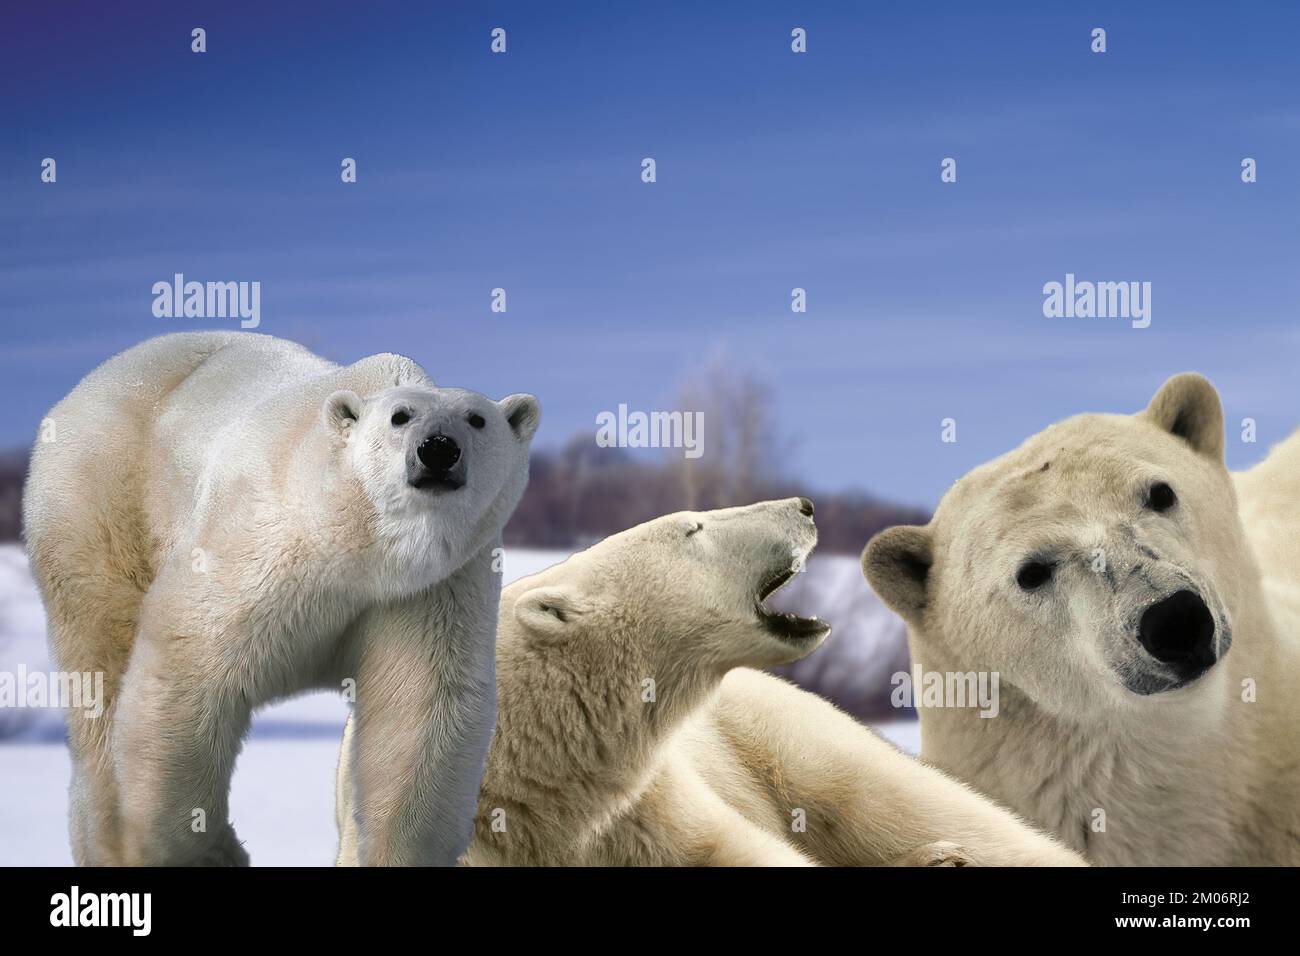 L'orso polare sempre più raro o orso bianco (Ursus maritimus) grande carnivoro del polo nord. Foto Stock